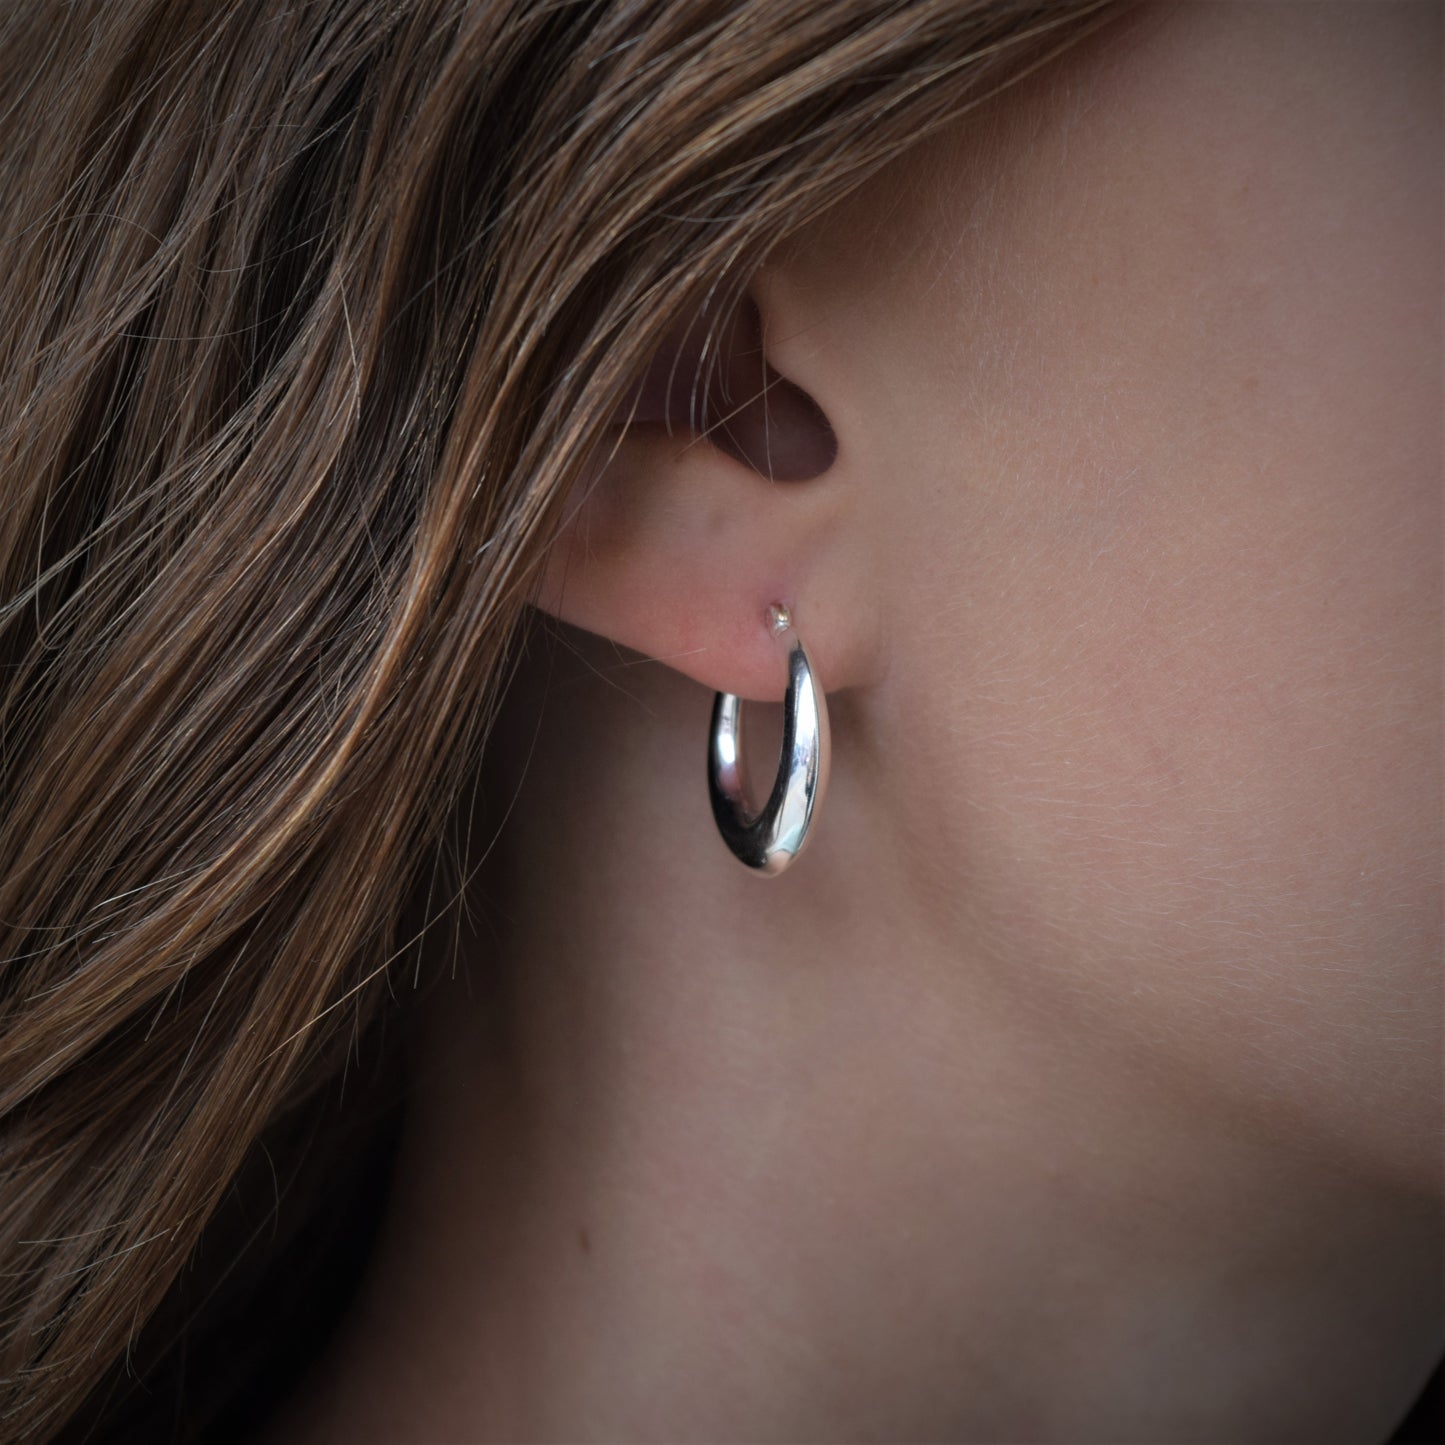 Small Sterling Silver Hoop Earrings